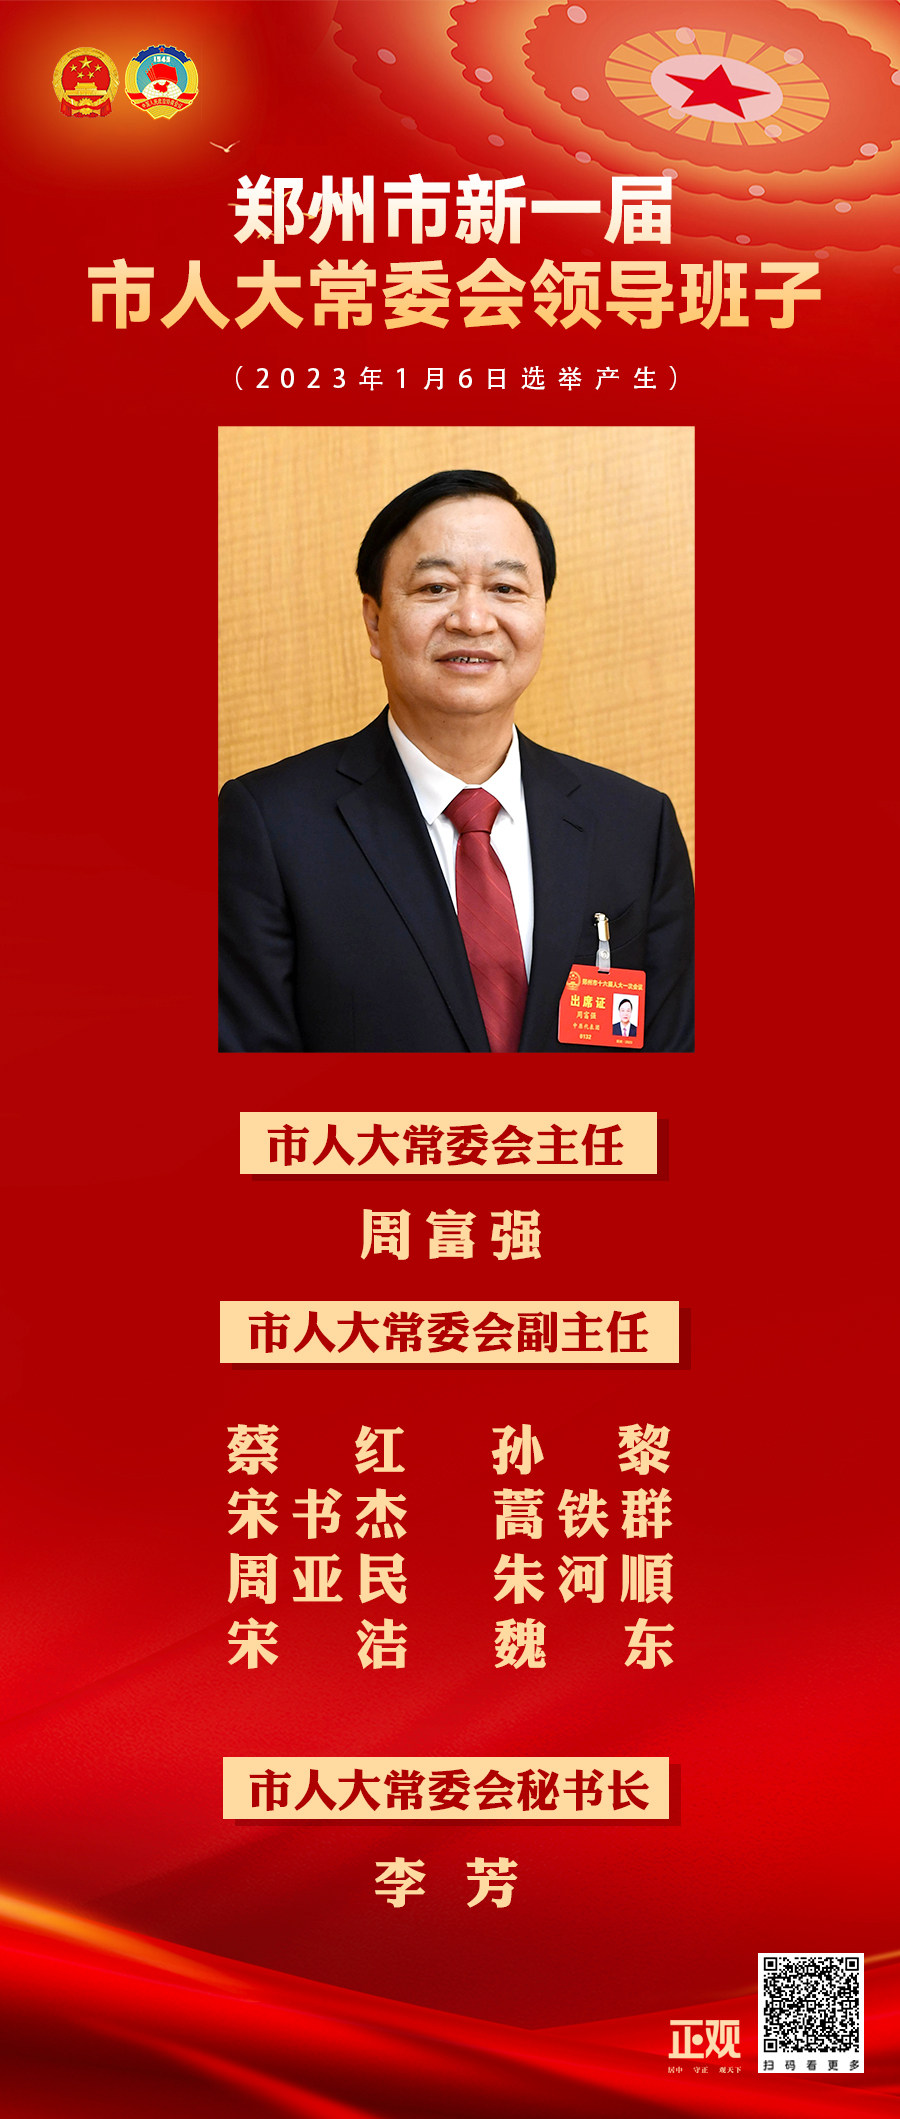 周富强当选郑州市第十六届人大常委会主任